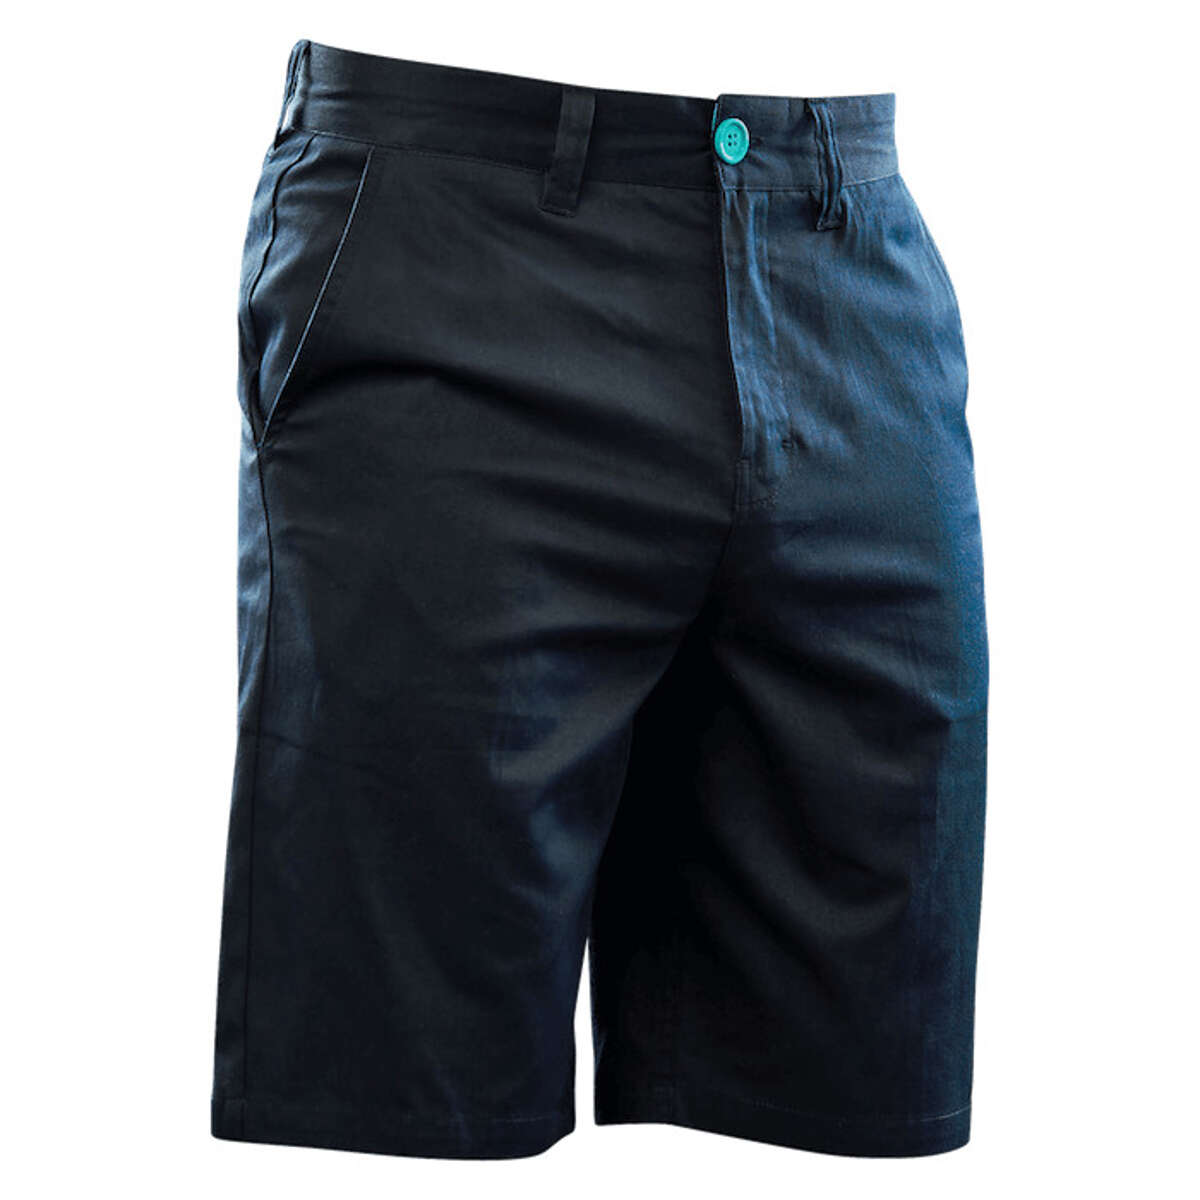 Seven MX Shorts Chino Black